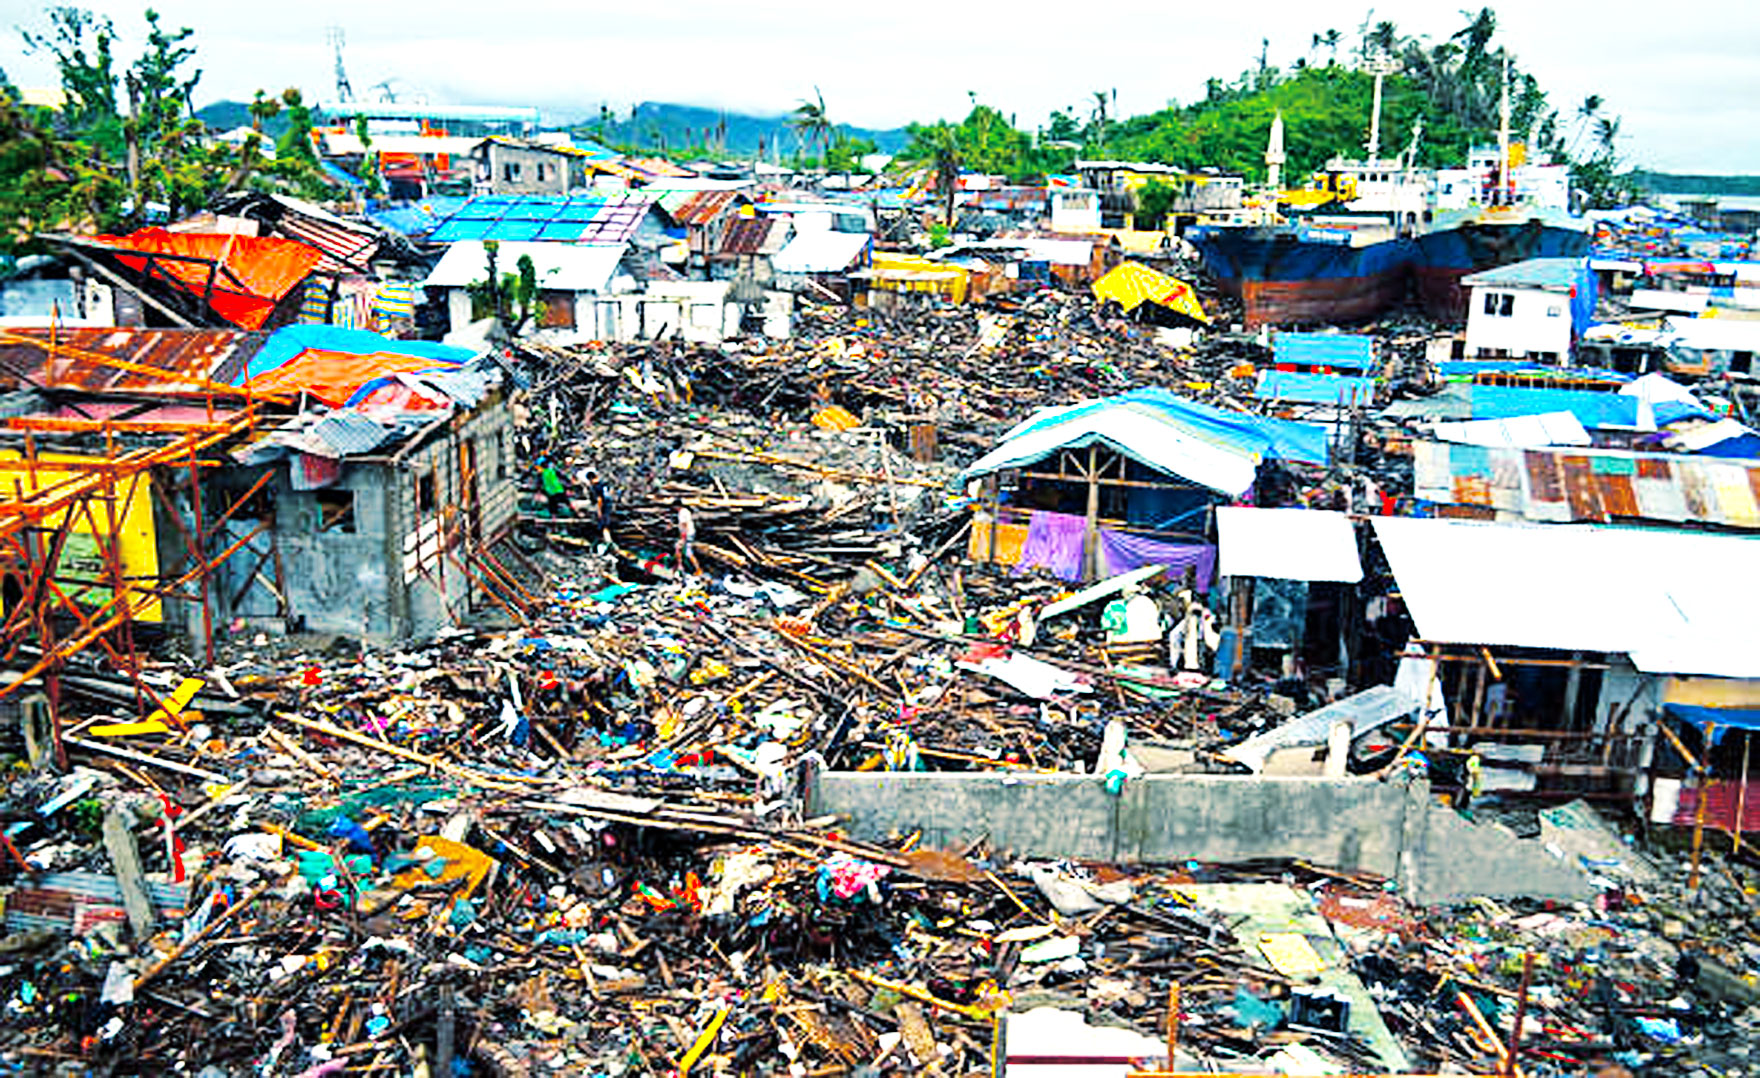 Topan super Rai hantam Filipina: Korban meninggal melonjak lebih dari 300 jiwa